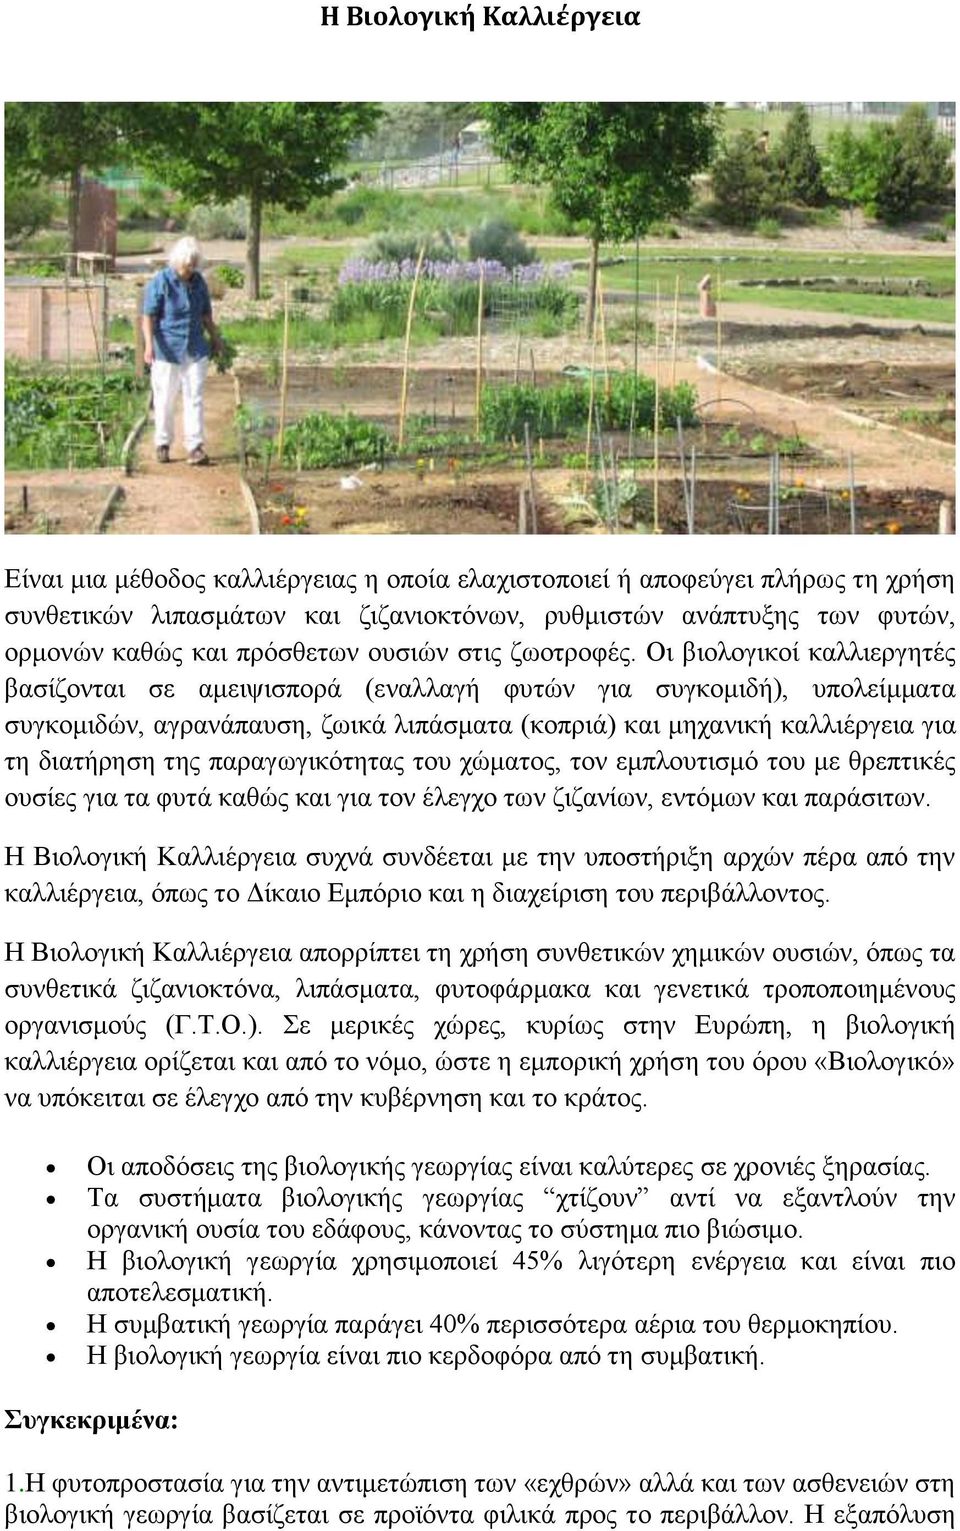 Οι βιολογικοί καλλιεργητές βασίζονται σε αμειψισπορά (εναλλαγή φυτών για συγκομιδή), υπολείμματα συγκομιδών, αγρανάπαυση, ζωικά λιπάσματα (κοπριά) και μηχανική καλλιέργεια για τη διατήρηση της